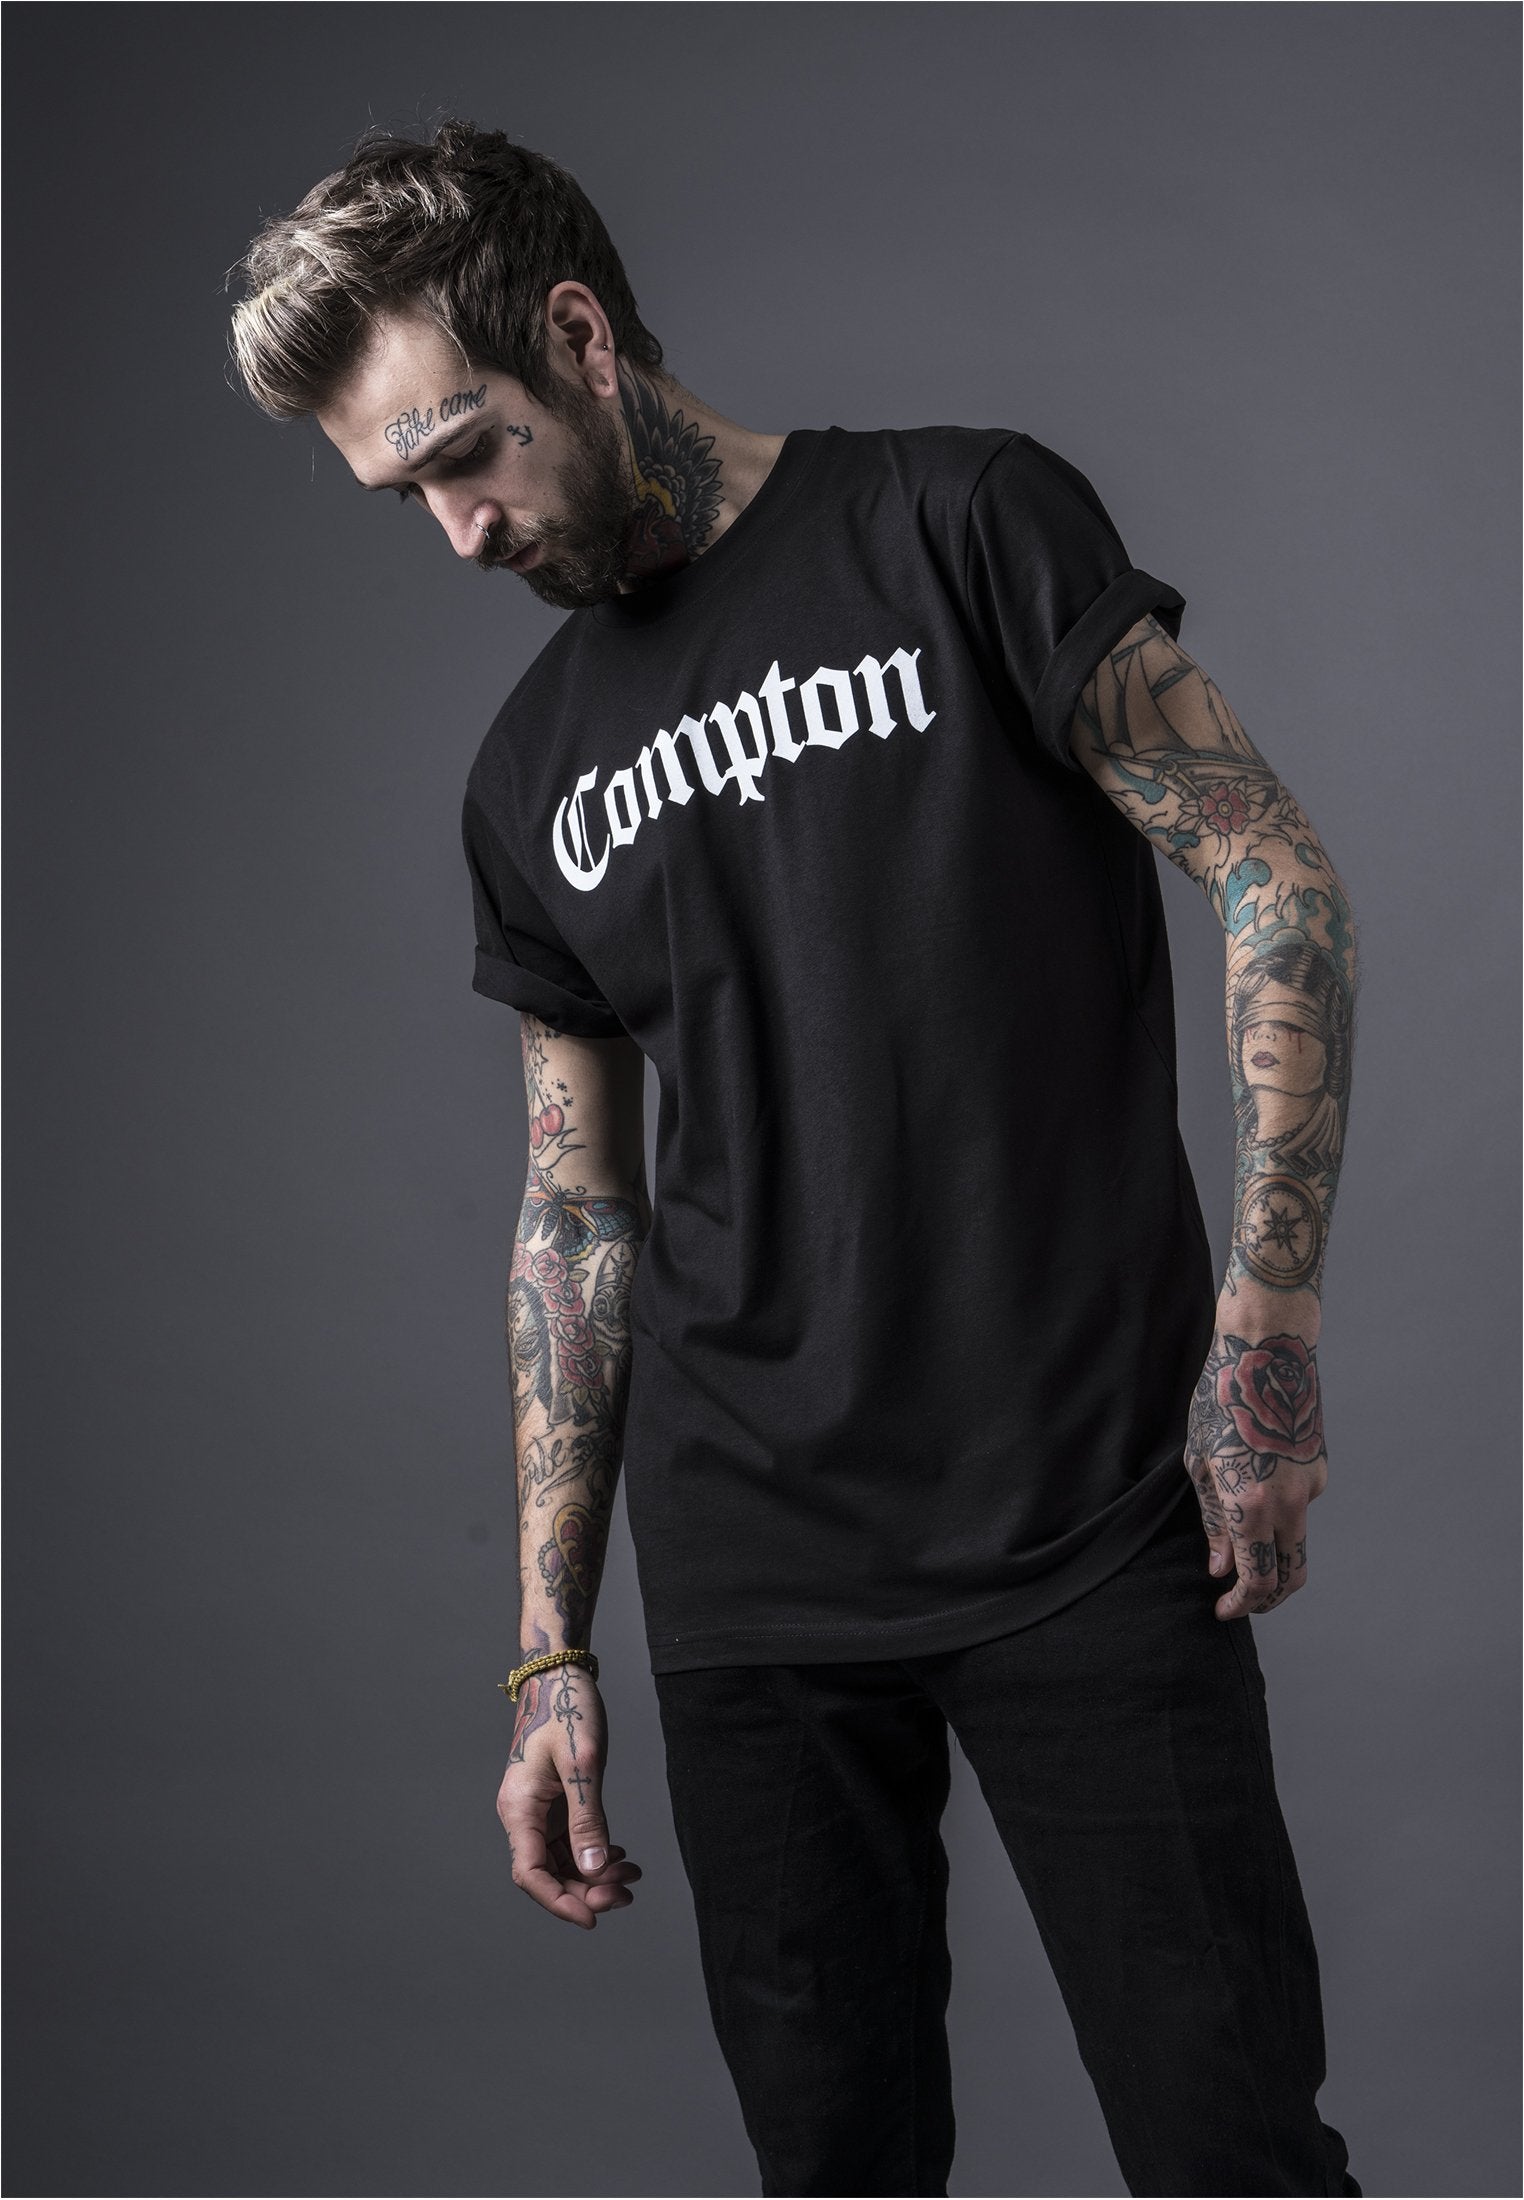 Compton Herren  T-Shirt-Street-& Sportswear Aurich - Shirts & Tops